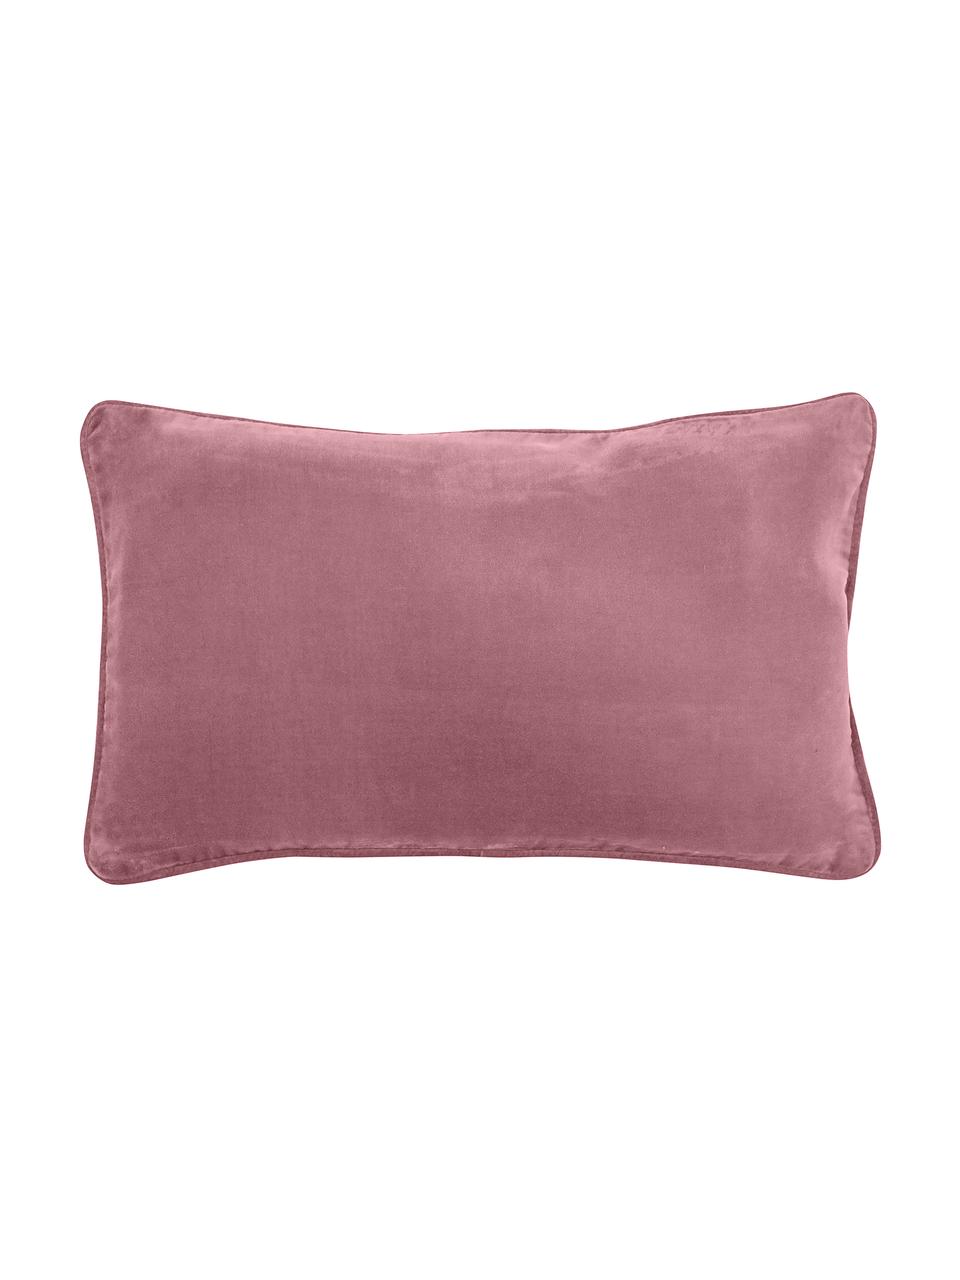 Federa arredo in velluto rosa cipria Dana, 100% velluto di cotone, Rosa cipria, Larg. 30 x Lung. 50 cm